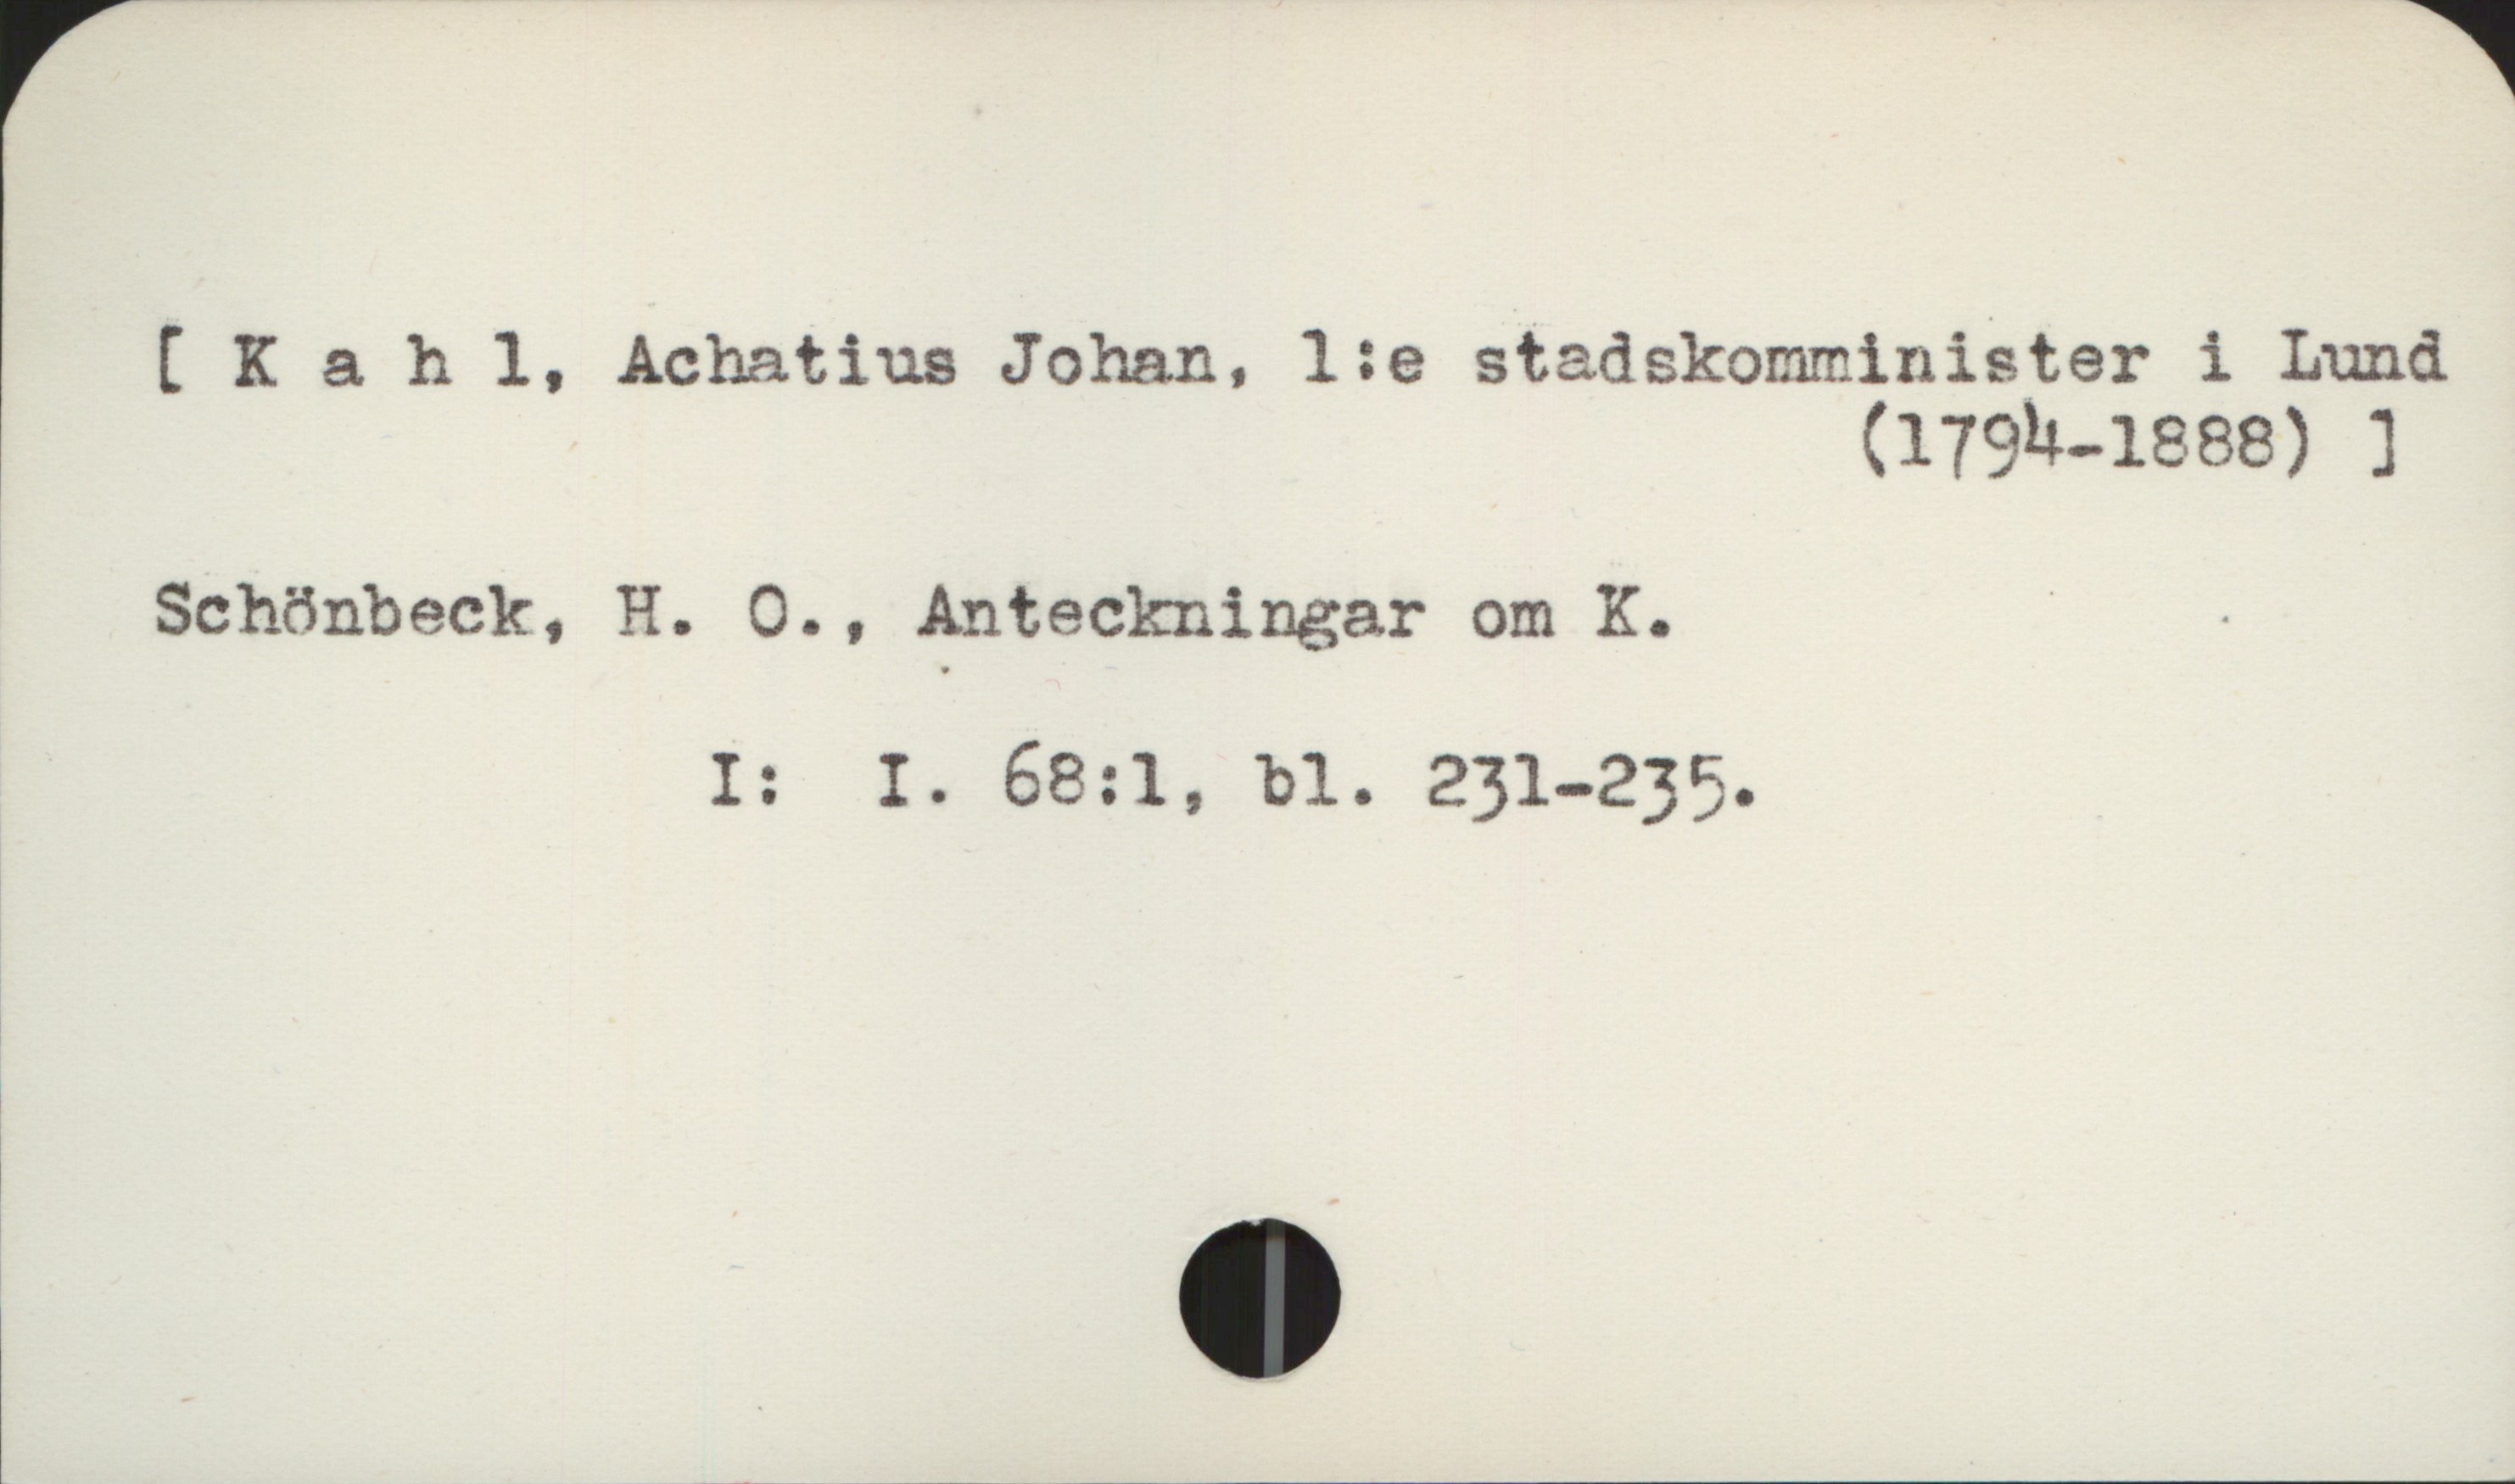 Kahl, Achatius (1794-1888) [Kahl, Achatius Johan, 1:e stadskomminister i Lund (1794-18888)]


Schönbeck, H. O., Anteckningar om K.
                     
                     I:  I. 68:1, bl. 231-235